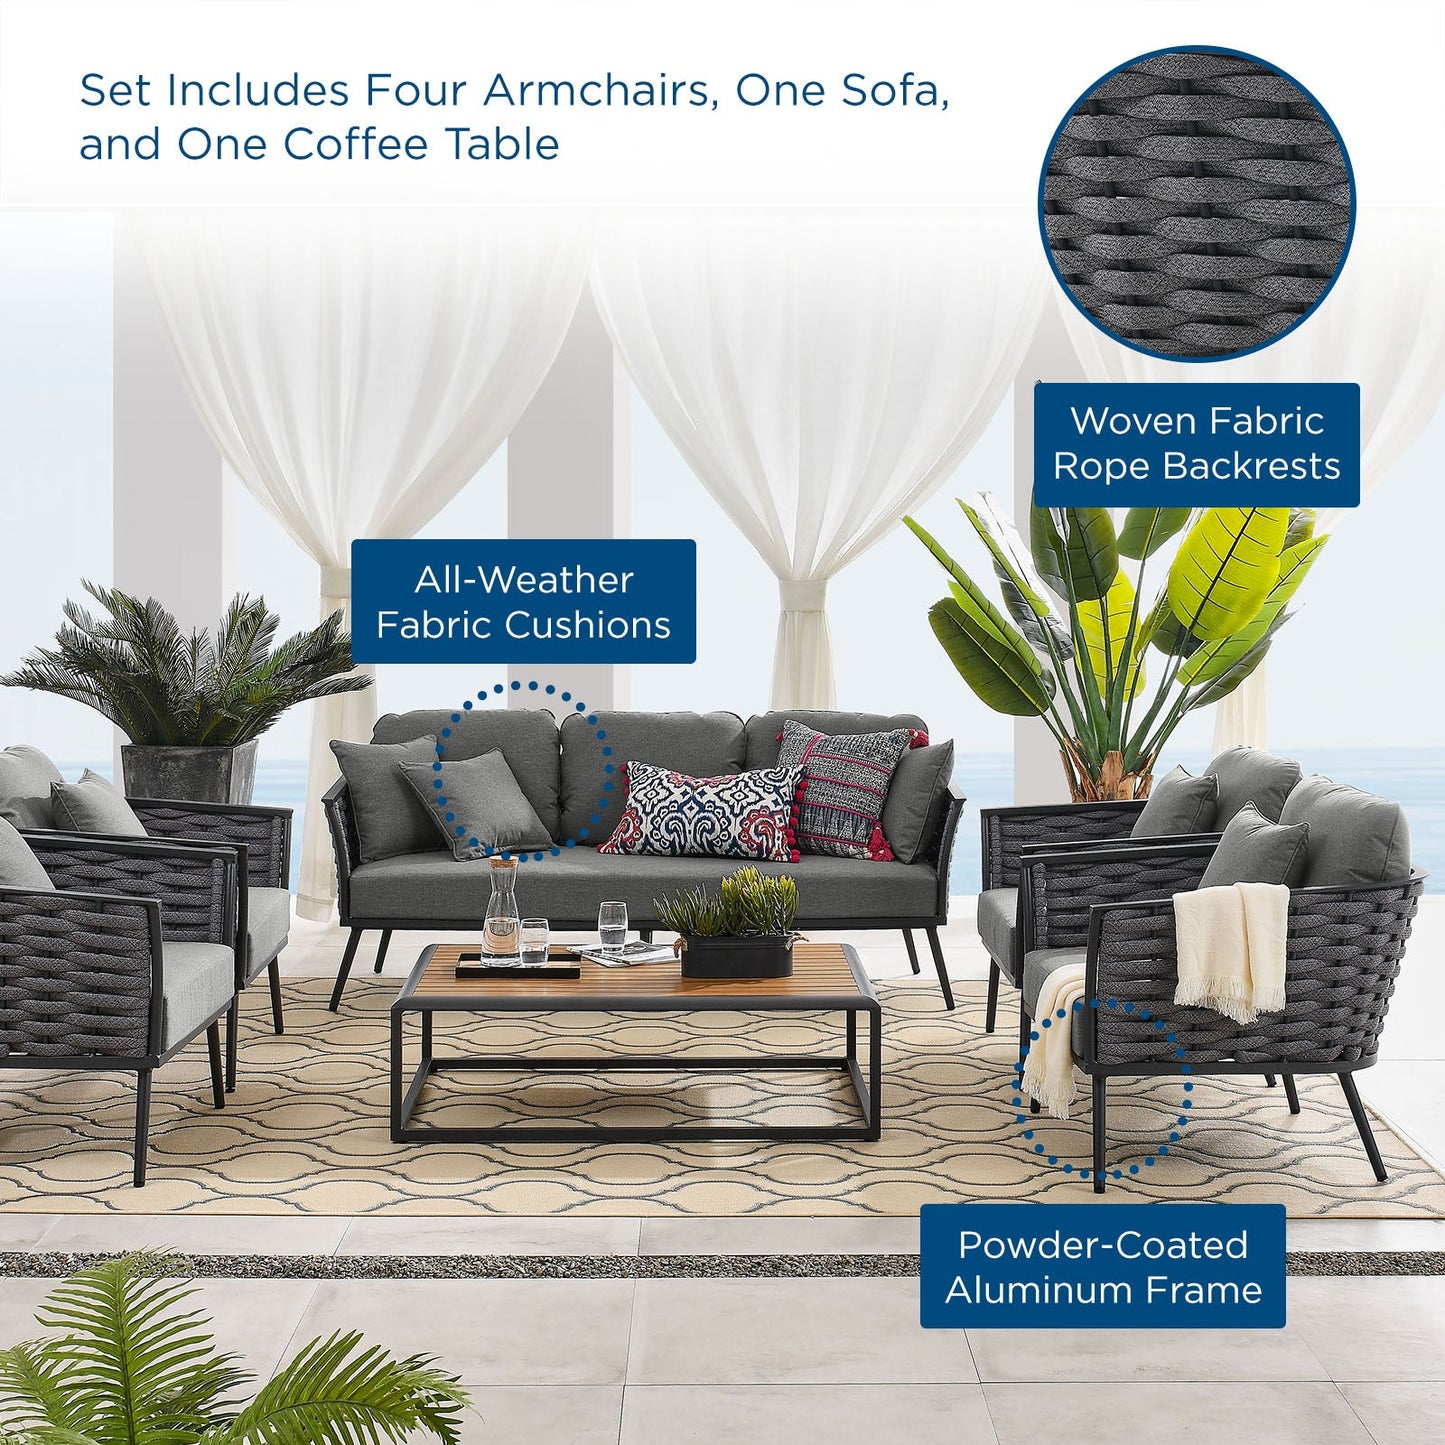 Sahira 6 Piece Outdoor Patio Aluminum Sectional Sofa Set